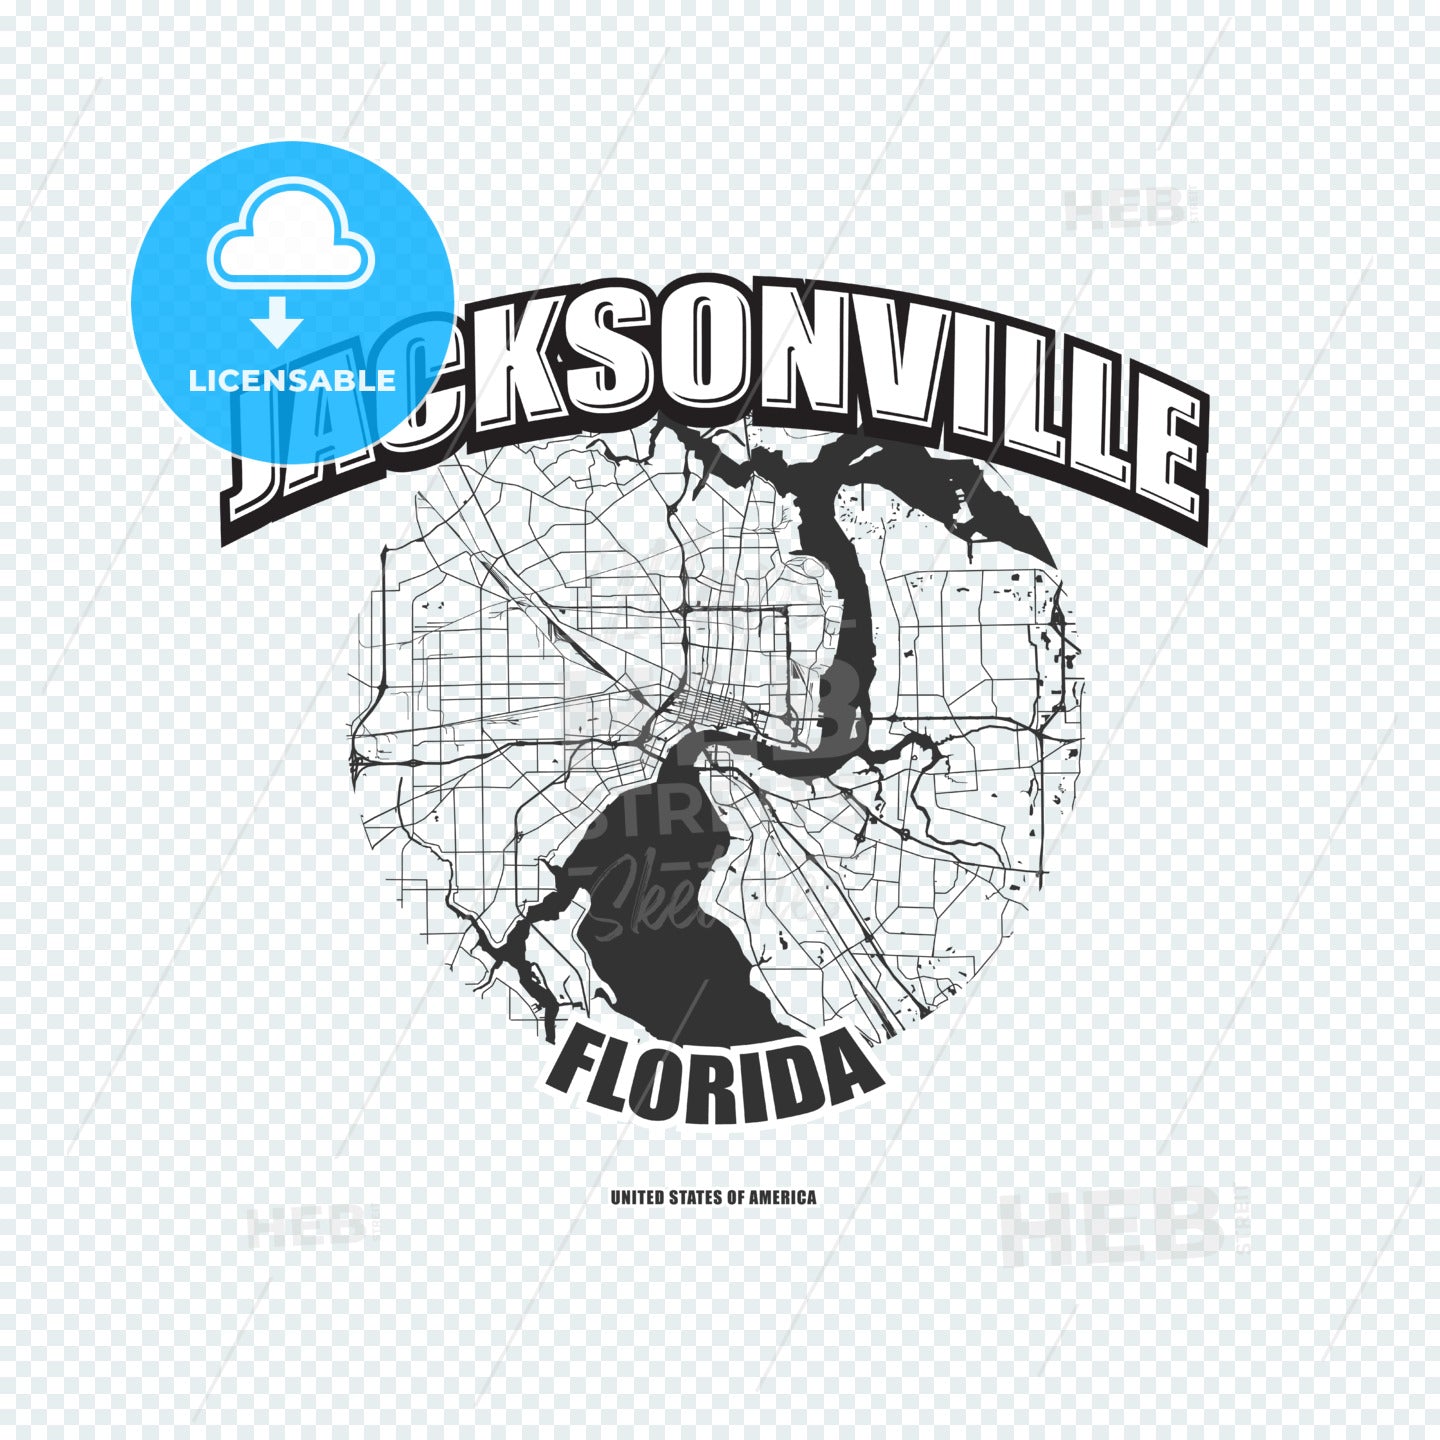 Jacksonville, Florida, logo artwork – instant download